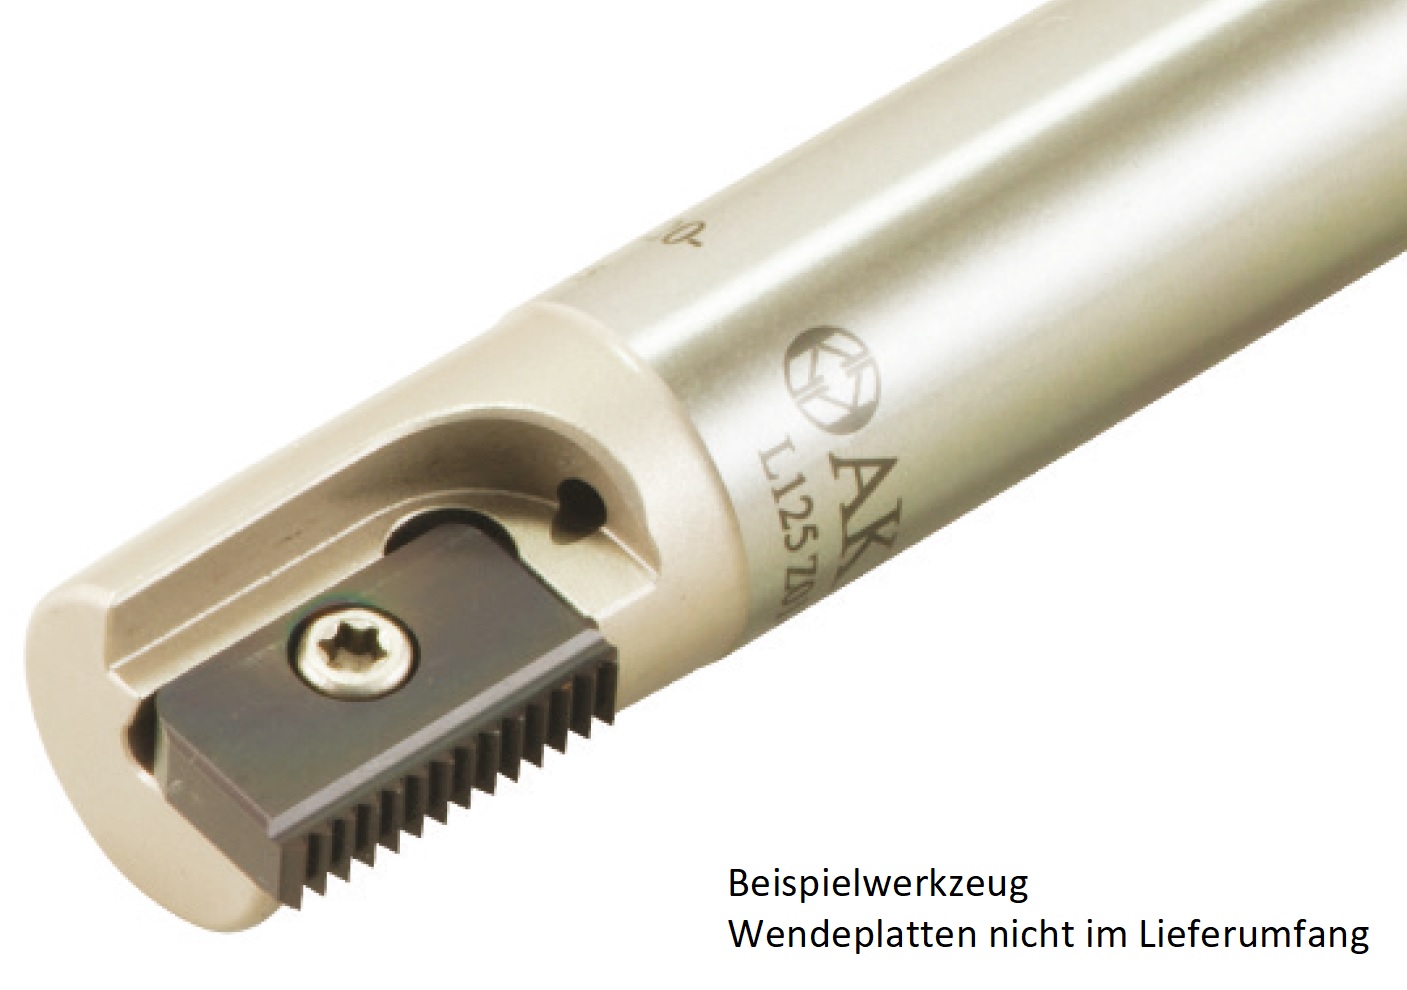 AKKO-Gewindefräser ø 29 mm, kompatibel mit CPT-Gewinde-Fräsplatte C30, Gesamtlänge = 150, mit Innenkühlung
